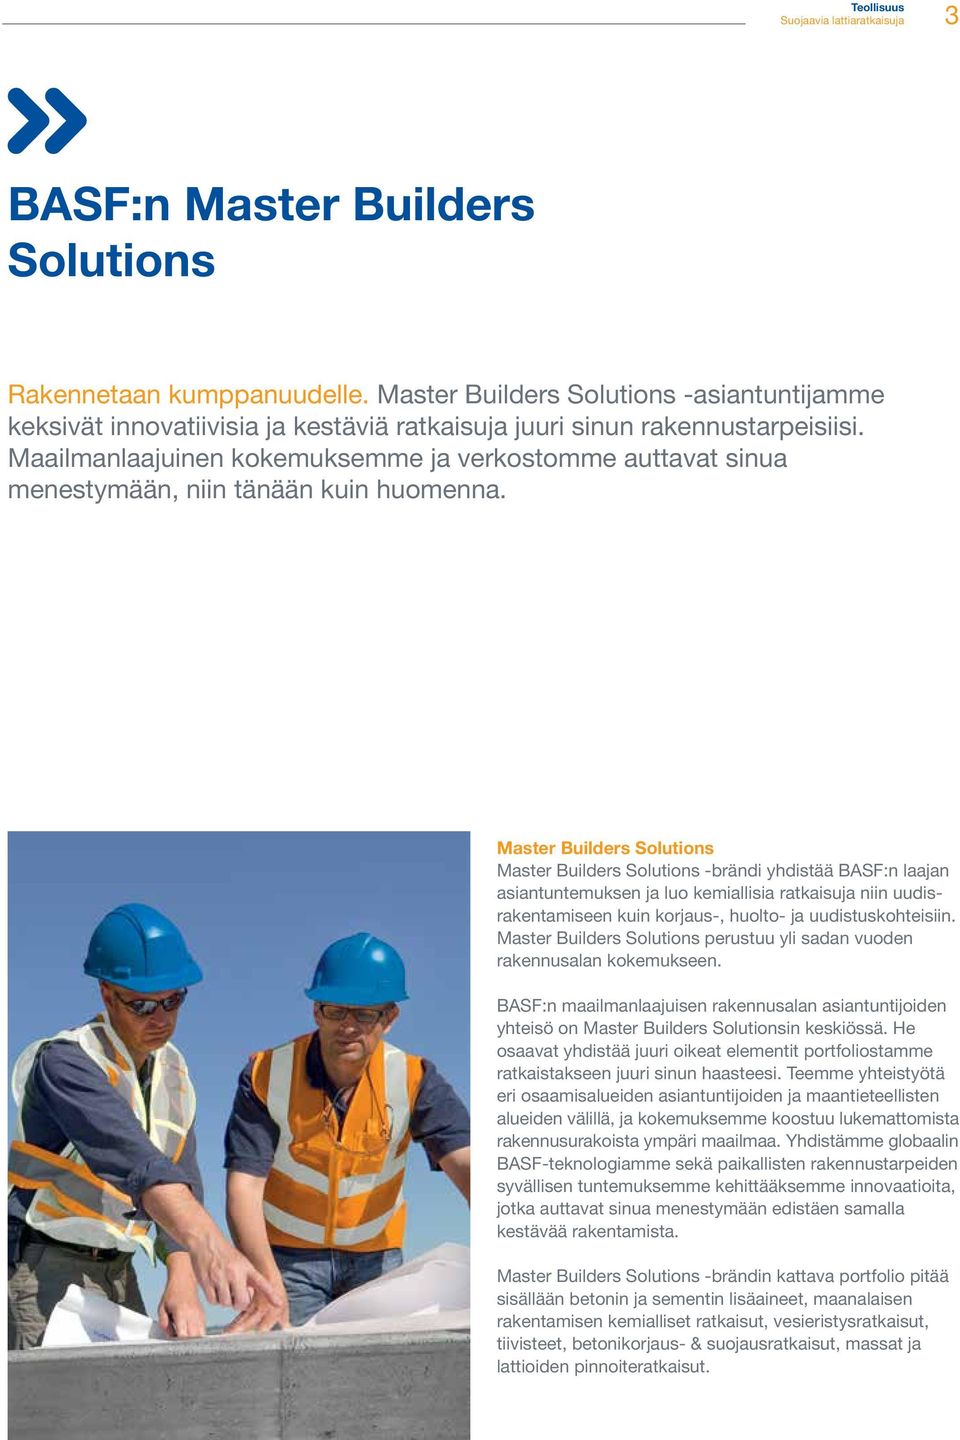 Master Builders Solutions Master Builders Solutions -brändi yhdistää BASF:n laajan asiantuntemuksen ja luo kemiallisia ratkaisuja niin uudisrakentamiseen kuin korjaus-, huolto- ja uudistuskohteisiin.